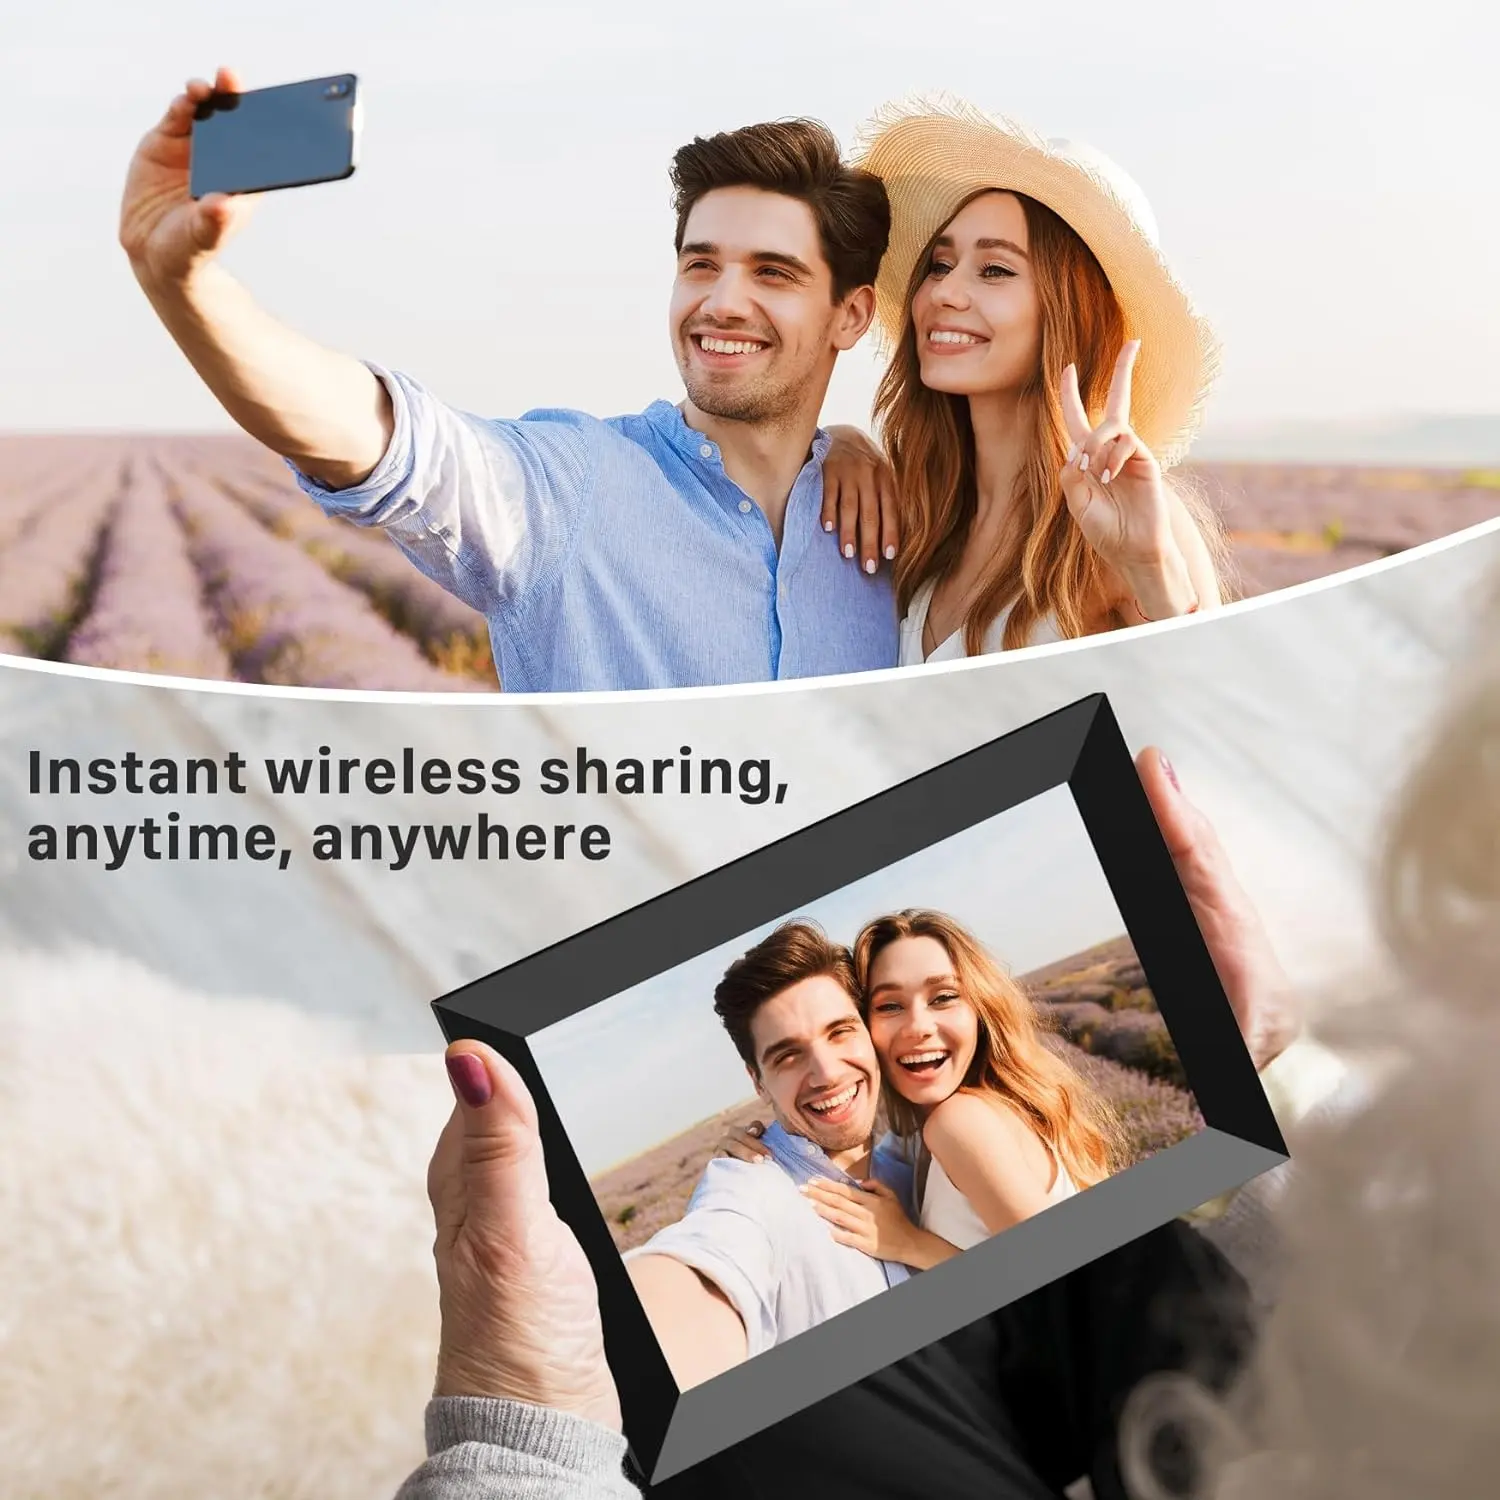 10.1 인치 WiFi 디지털 사진 프레임 32GB IPS 터치 스크린 자동 회전 슬라이드 쇼 Uhale 앱을 통해 원격으로 사진 공유